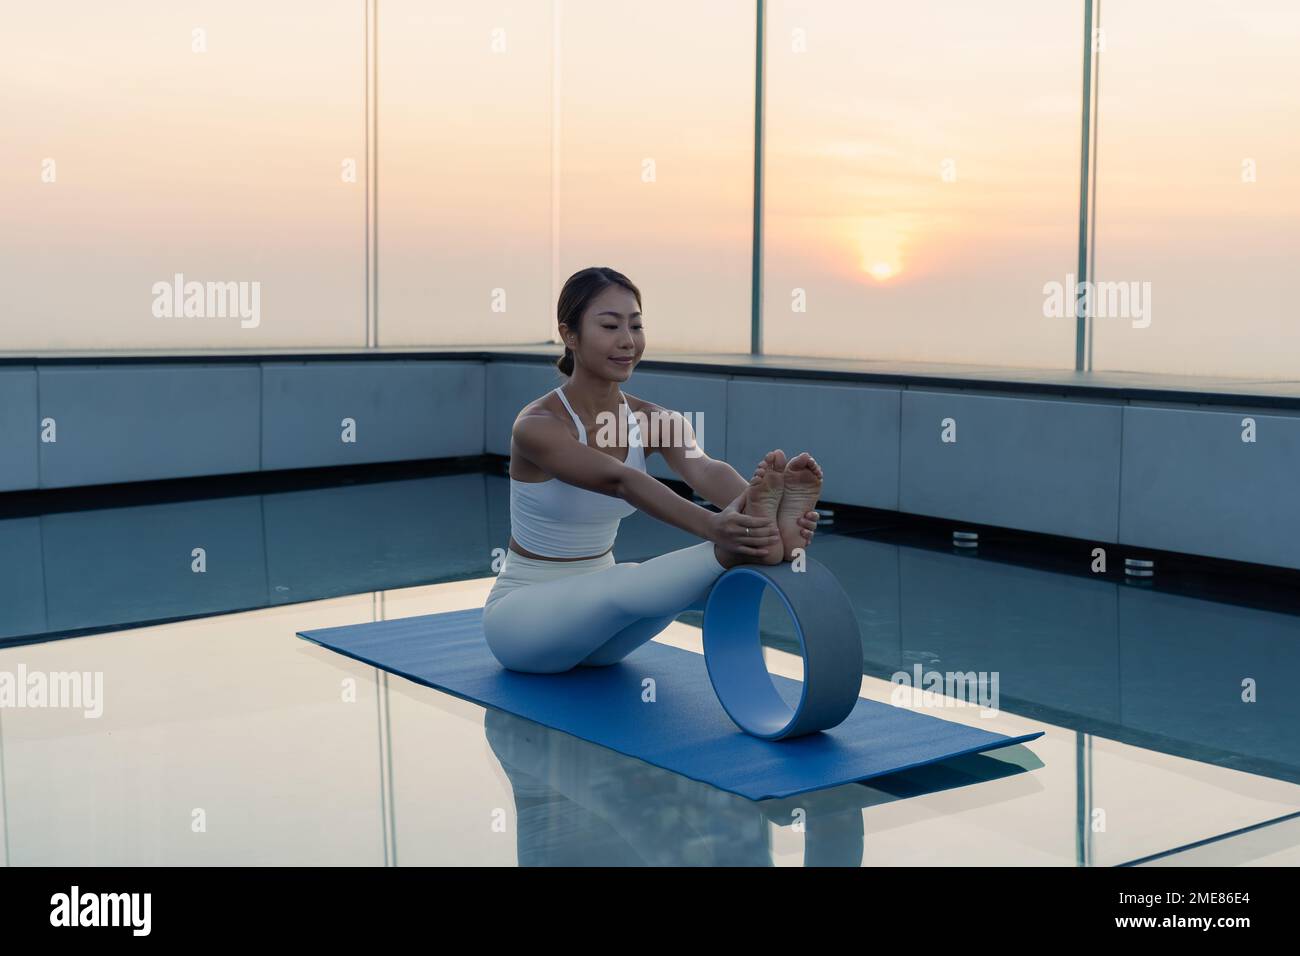 Ritratto di giovane bella donna asiatica che pratica un esercizio di yoga sui tetti durante il tramonto. Calma e relax, felicità femminile. Immagine orizzontale Foto Stock